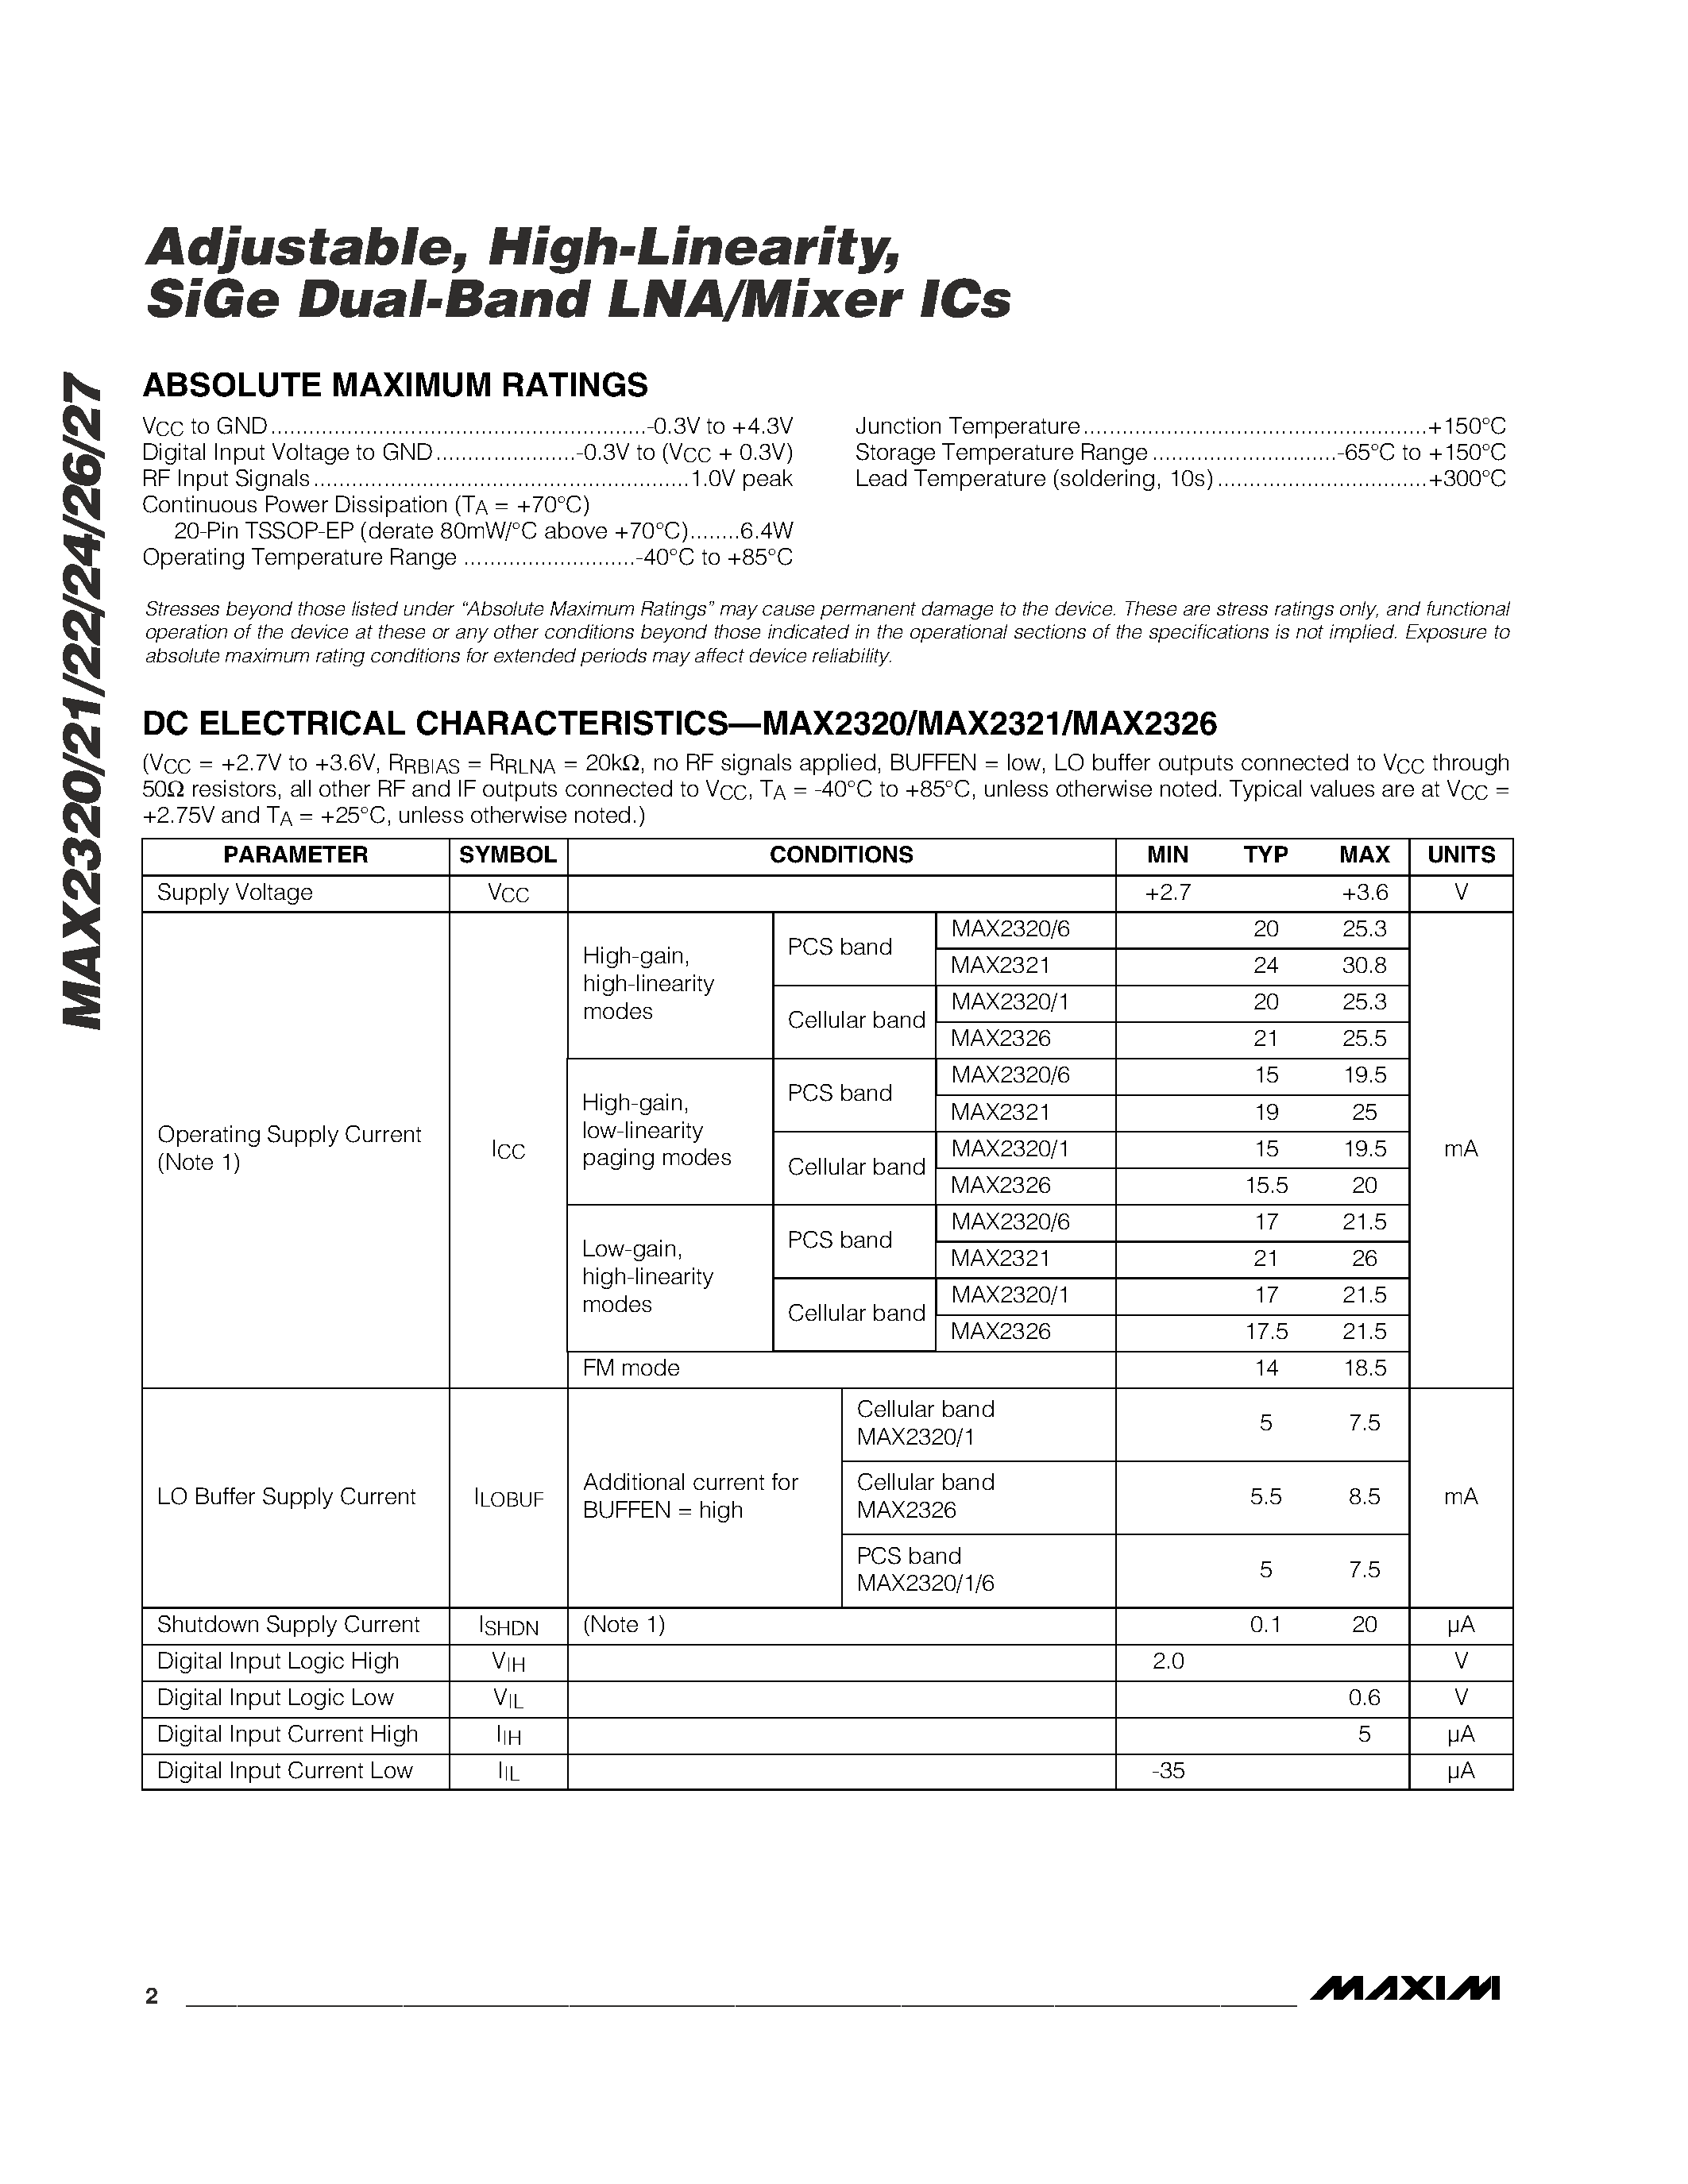 Даташит MAX2322 - Adjustable / High-Linearity / SiGe Dual-Band LNA/Mixer ICs страница 2